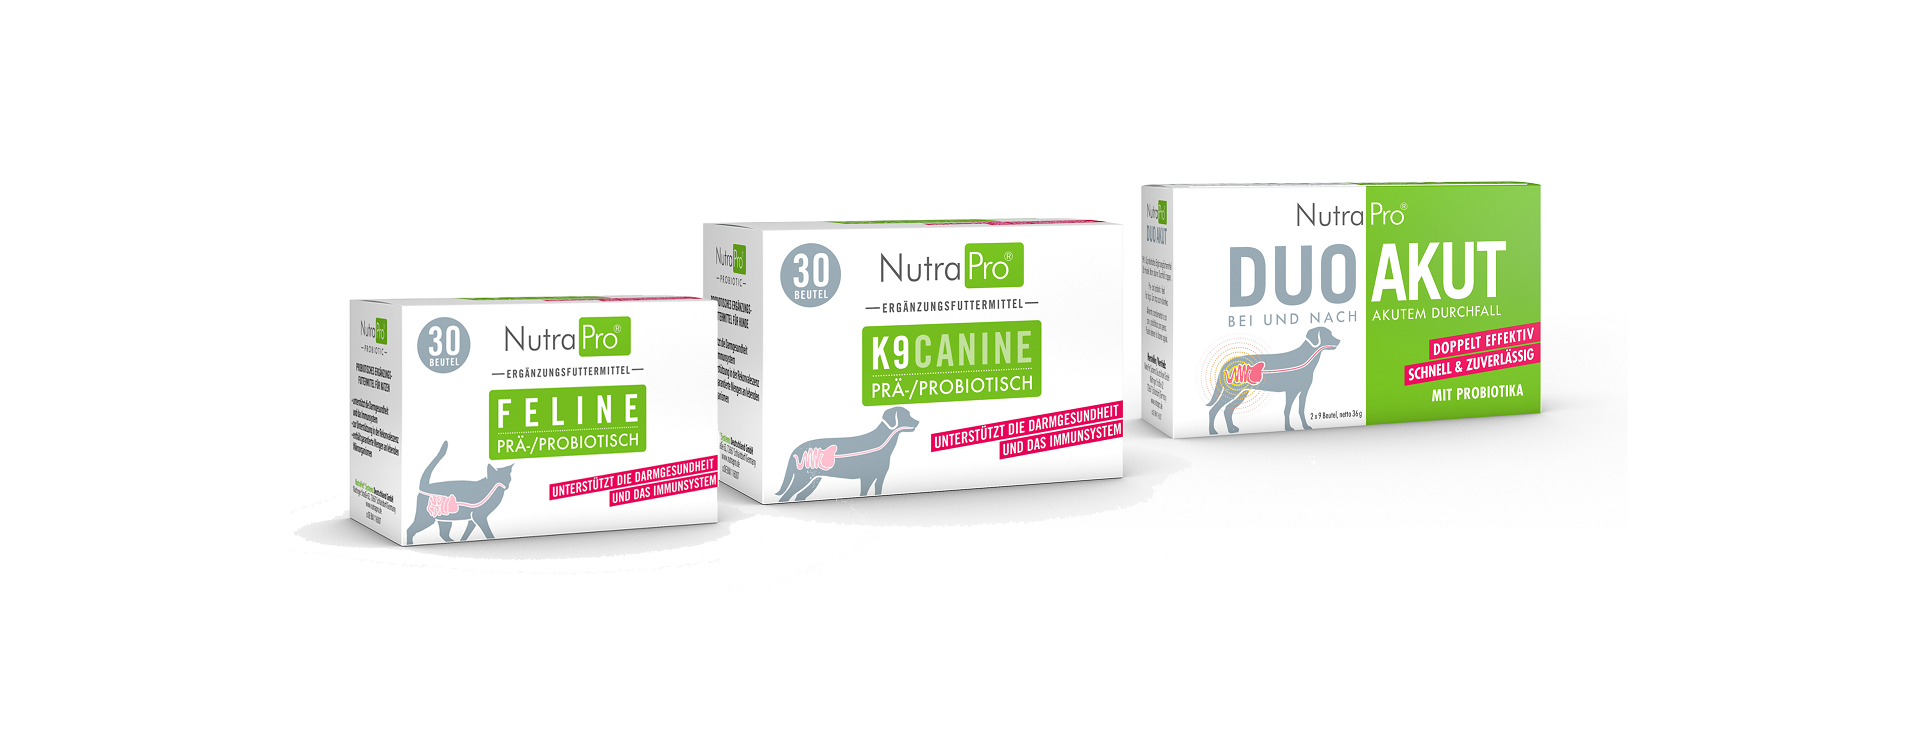 NutraPro: een hoogwaardig pre- & probiotisch voedingssupplement voor dieren!